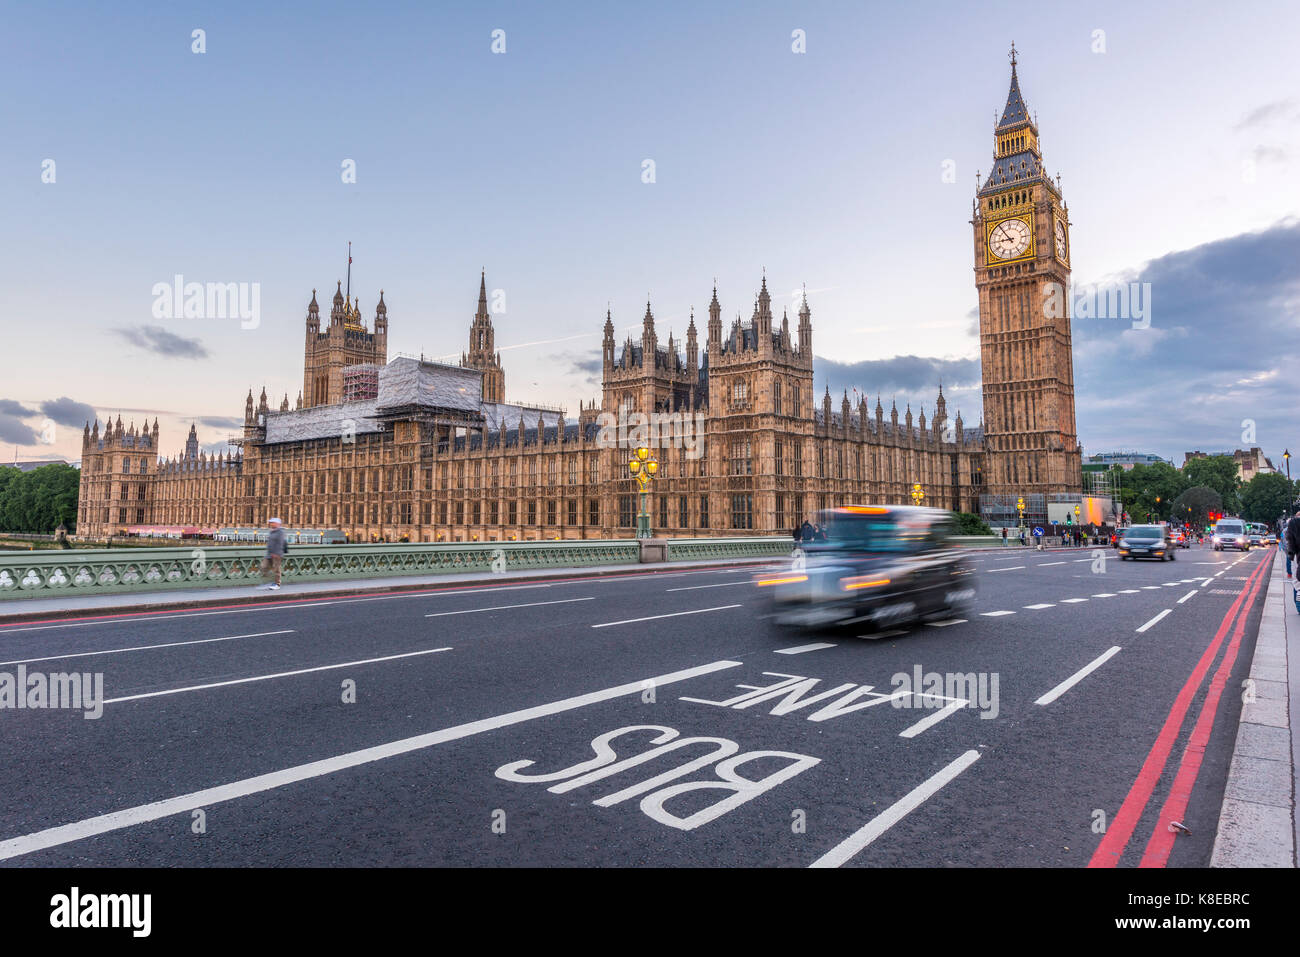 Les taxis de Londres sur le pont de Westminster, le palais de Westminster, le Parlement, Big Ben, Westminster, Londres, Angleterre Banque D'Images